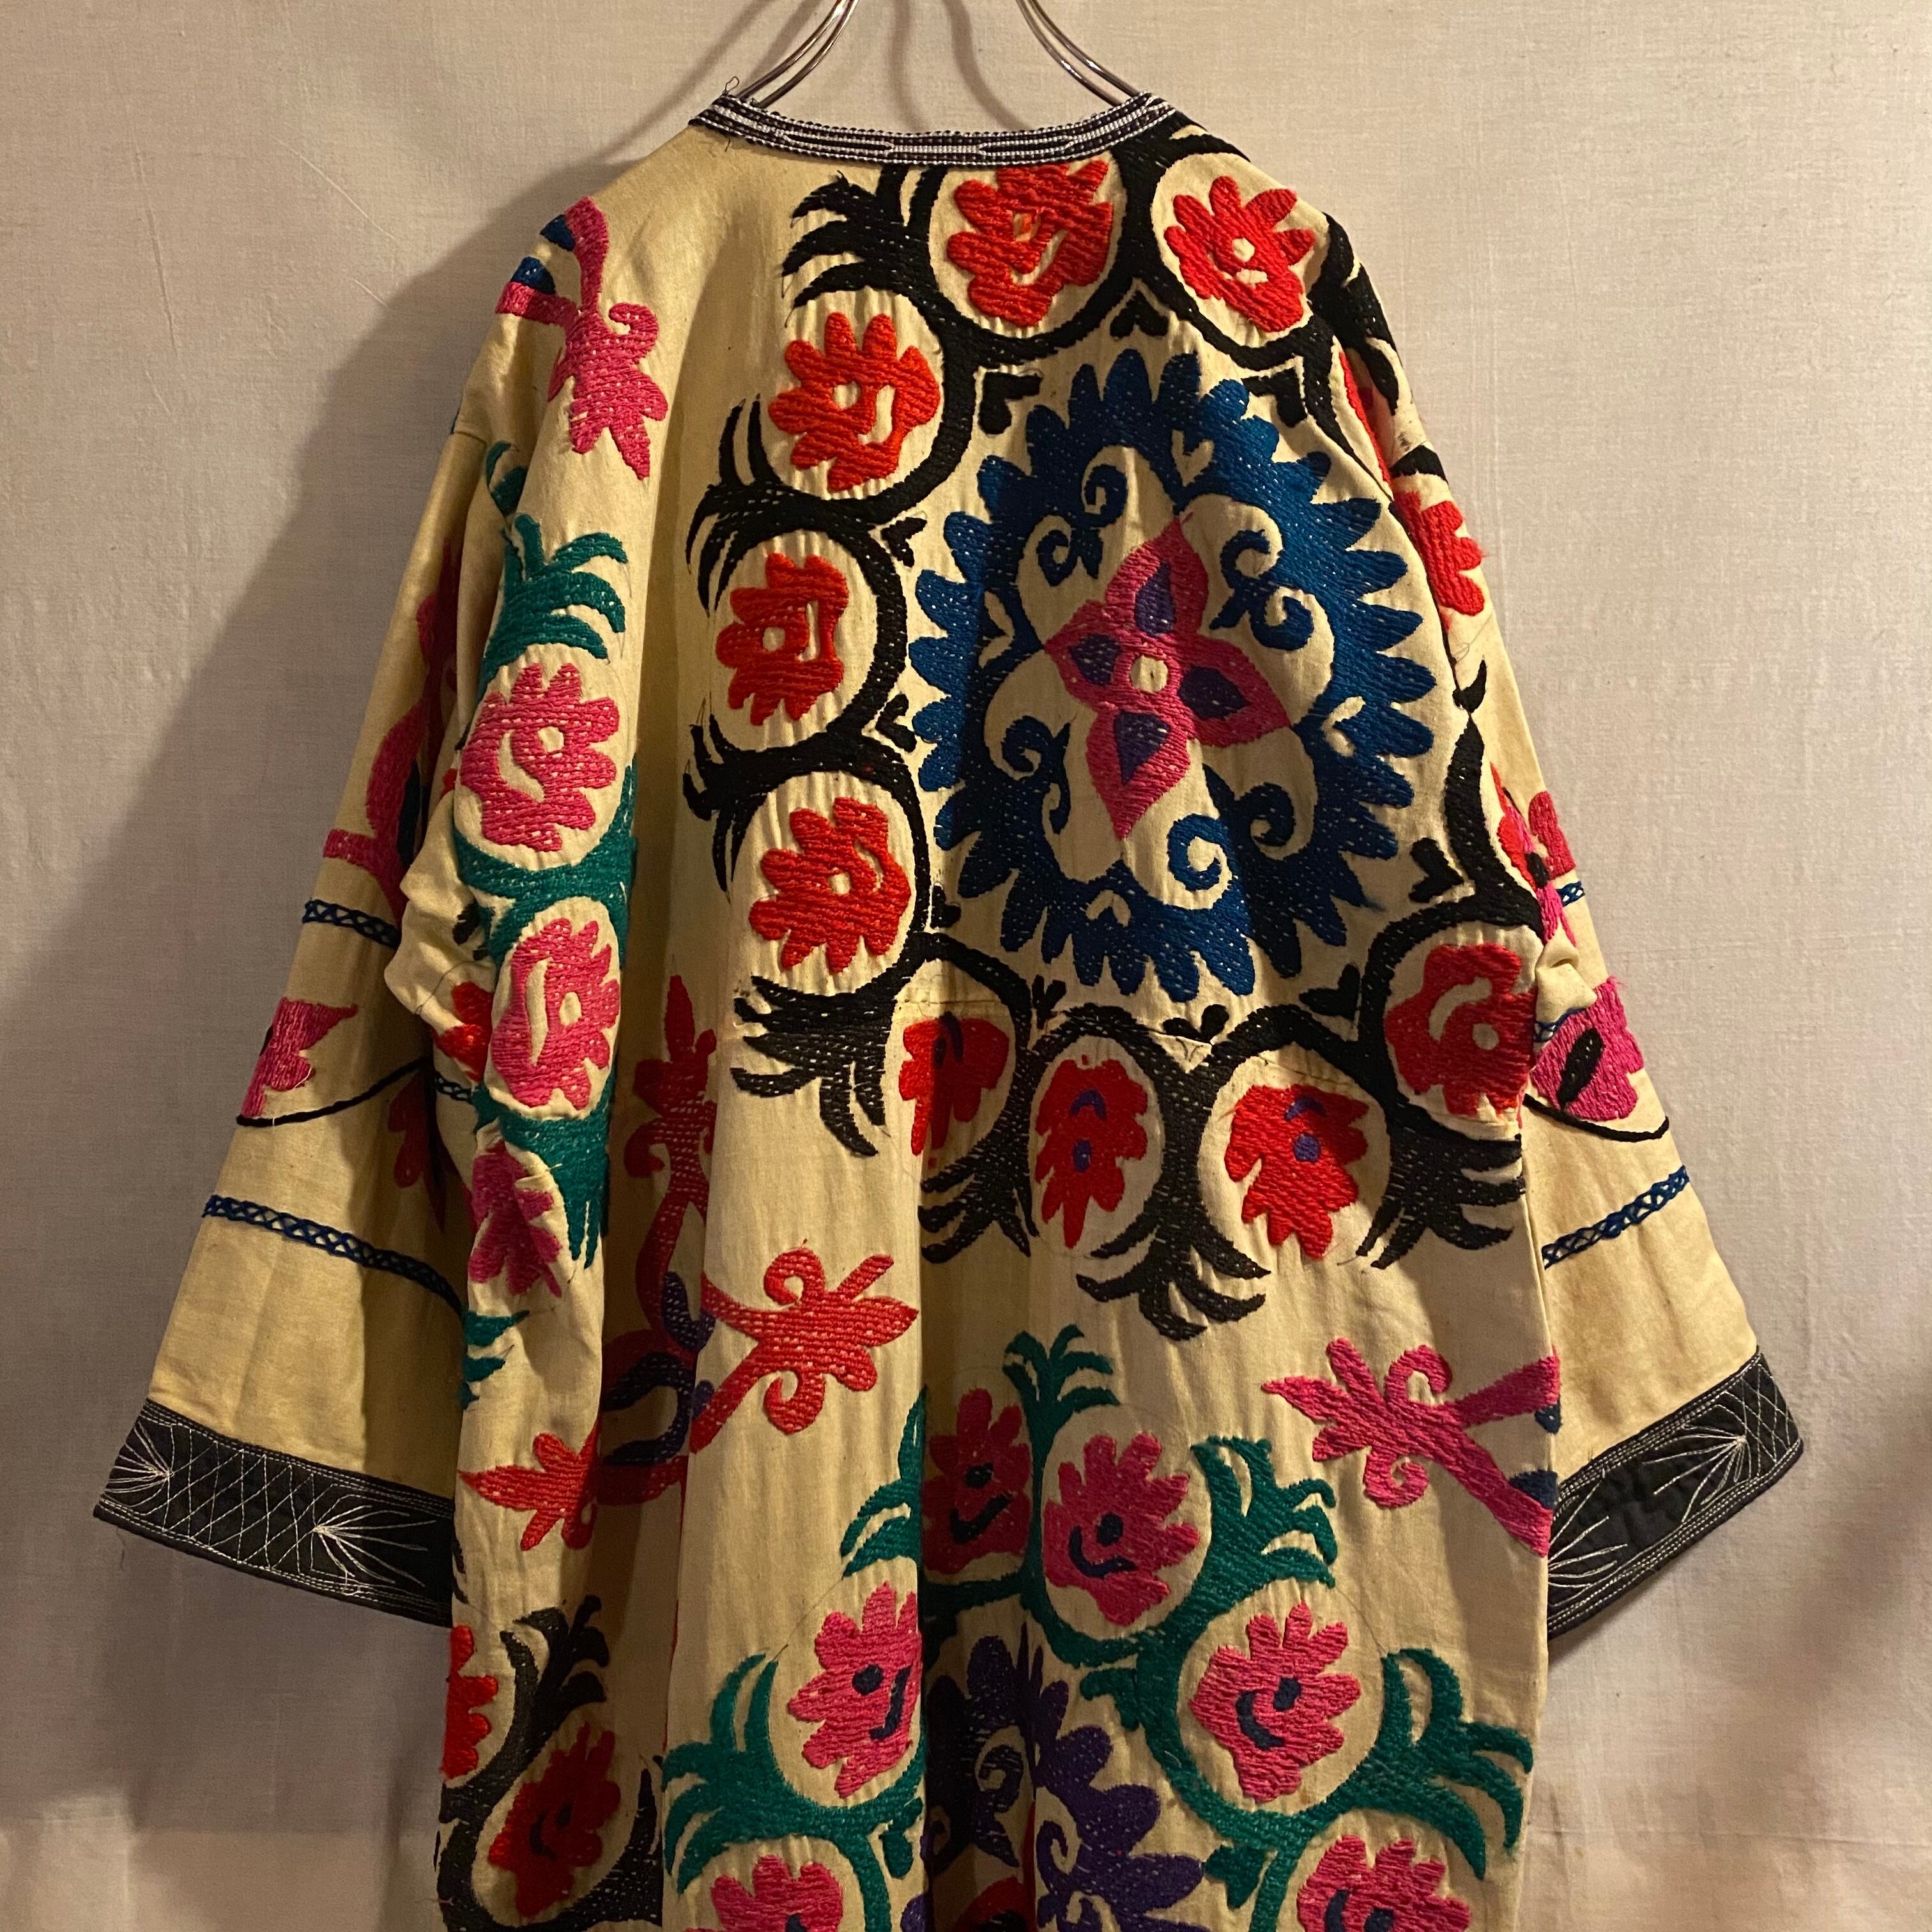 vintage embroidery suzani gown スザニガウン (ttm nitako